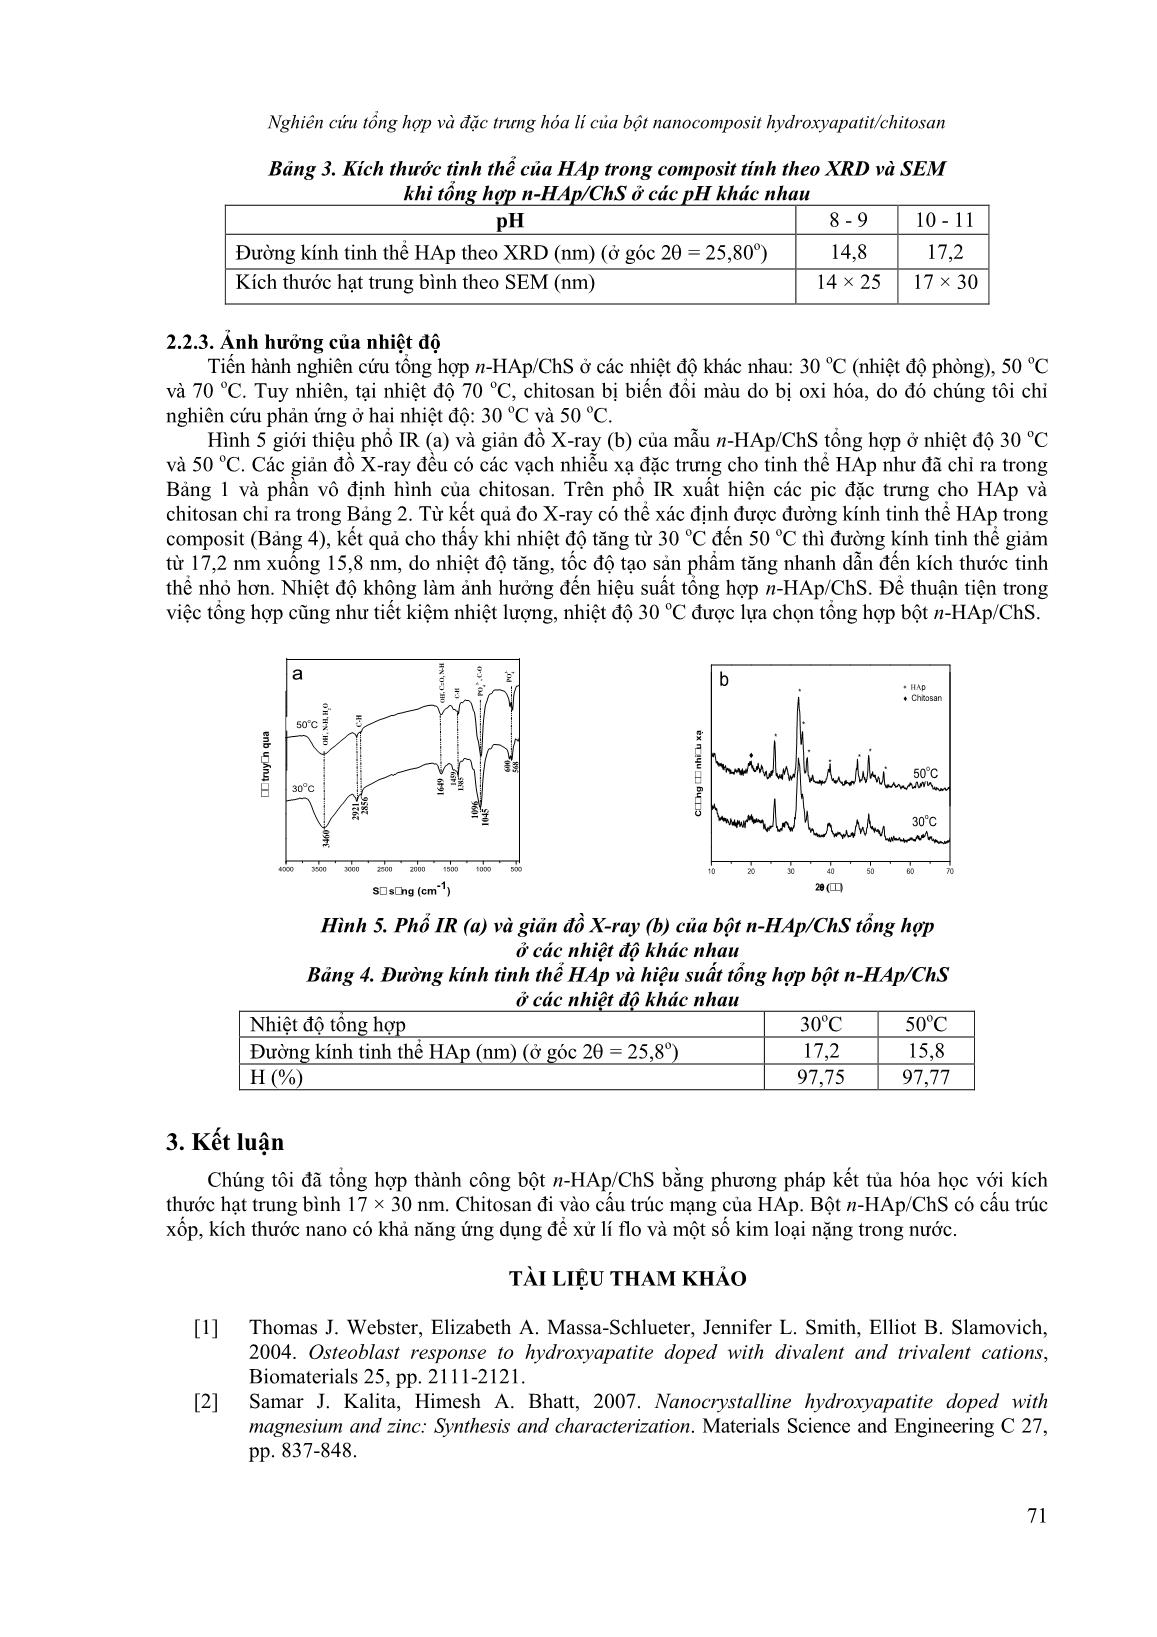 Nghiên cứu tổng hợp và đặc trưng hóa lí của bột Nanocomposit Hydroxyapatit/Chitosan trang 6